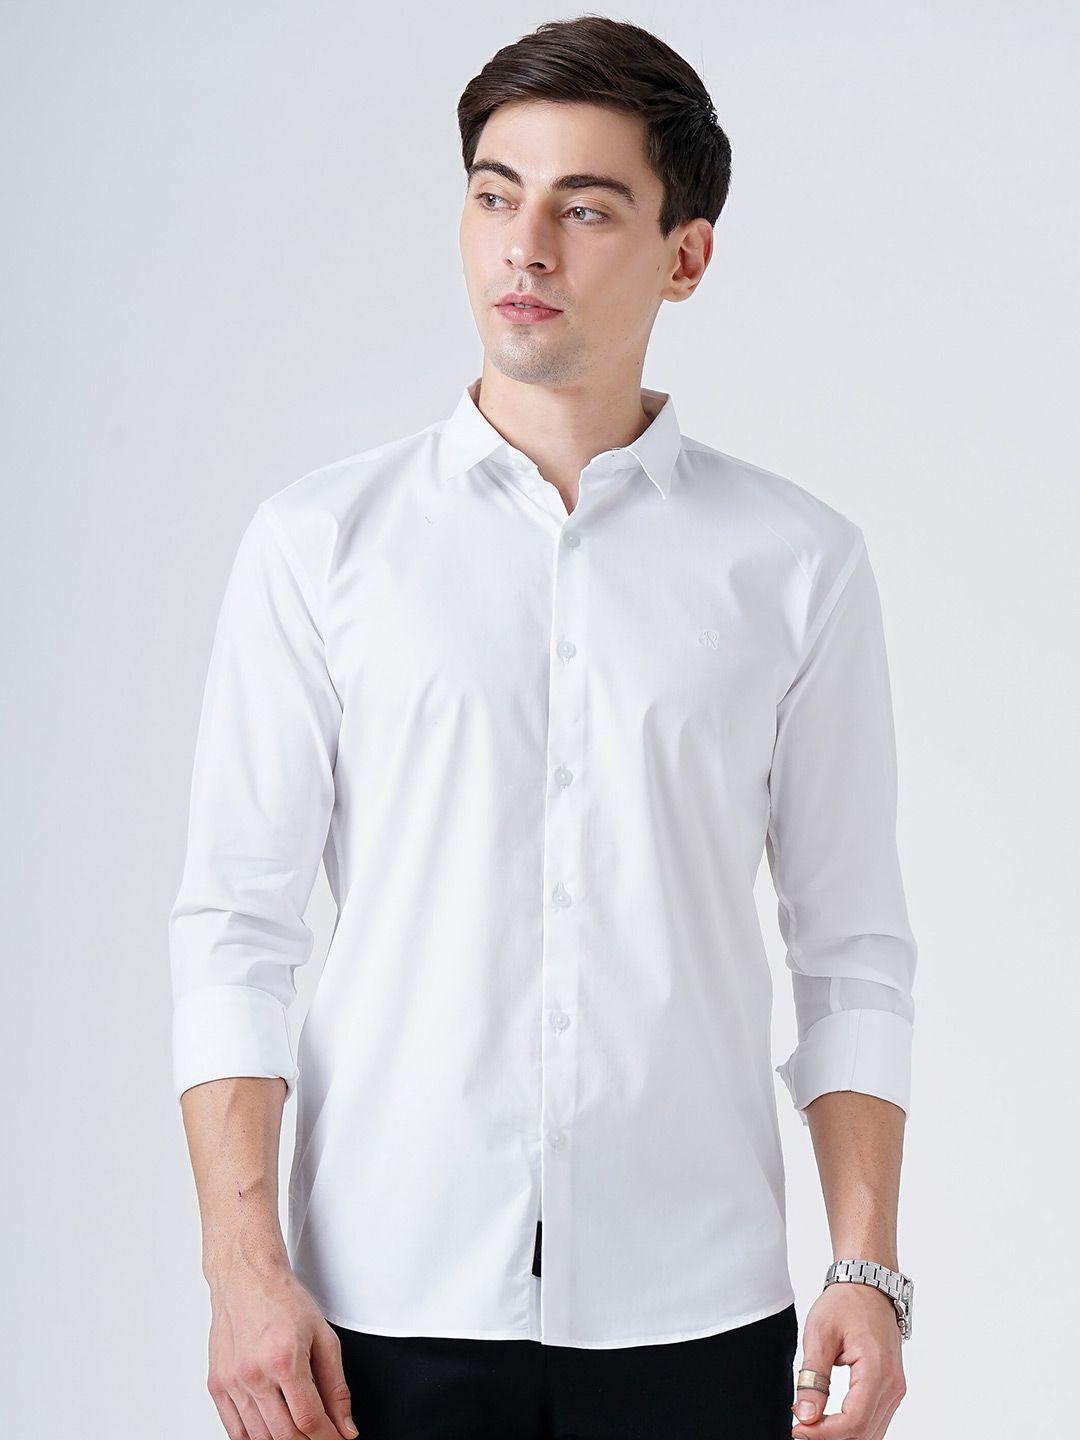 soratia men white slim fit casual shirt